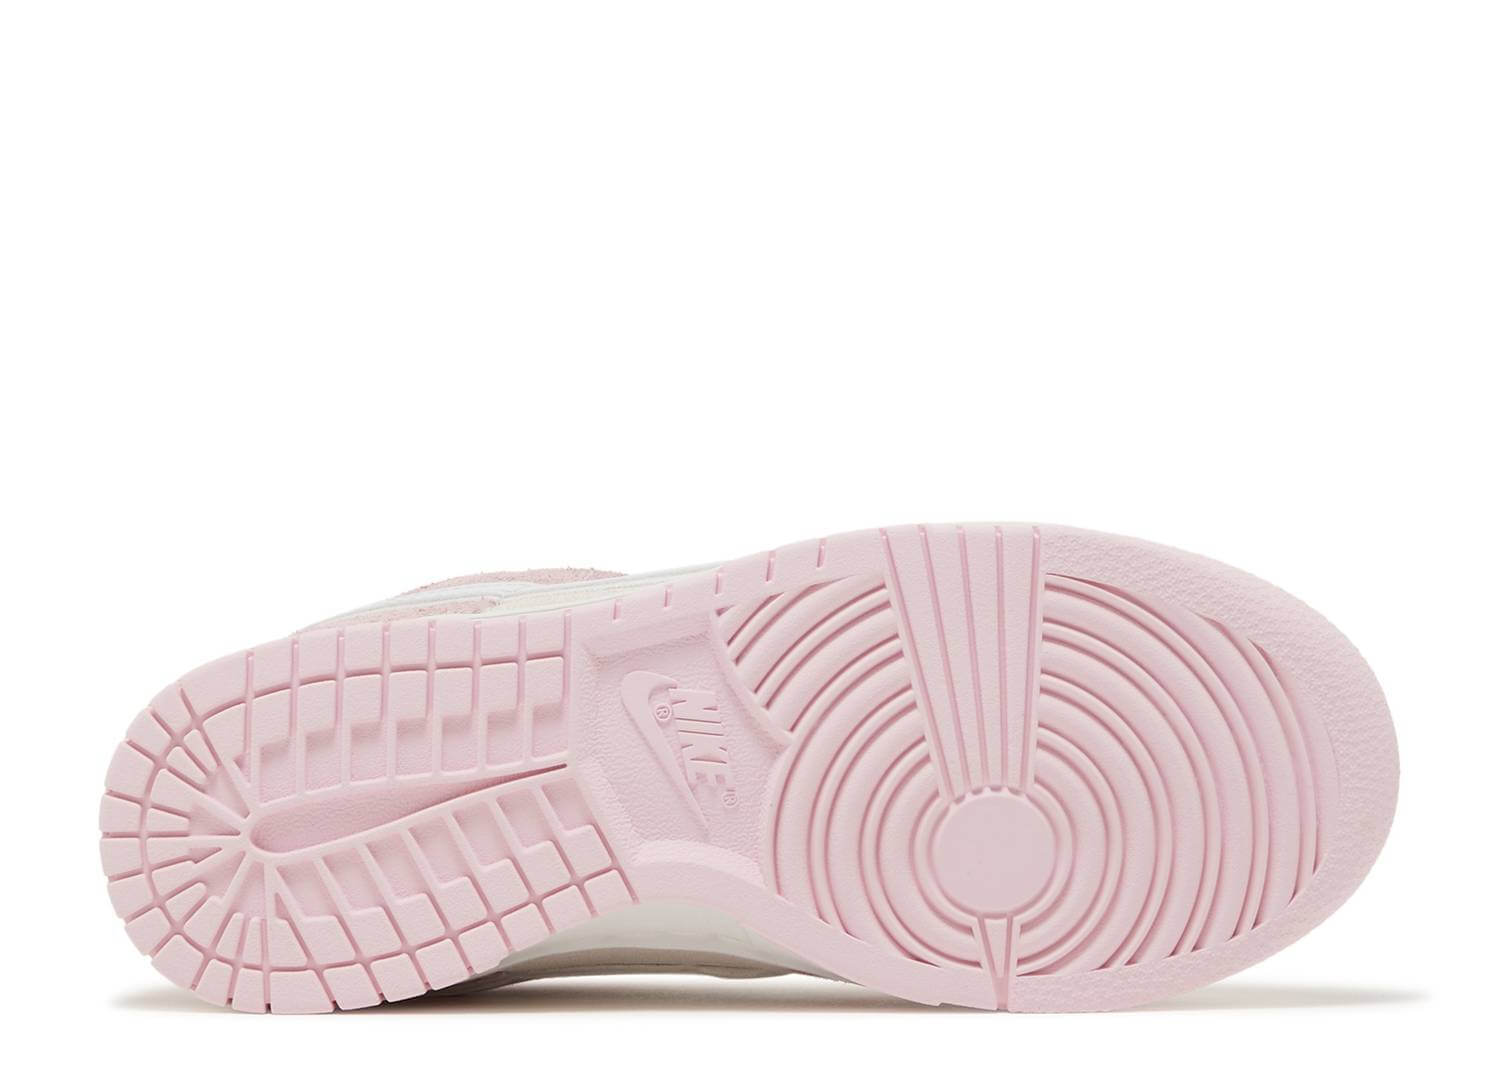 Women's Dunk Low 'LX Pink Foam' (DV3054-600) Release Date. Nike SNKRS IN